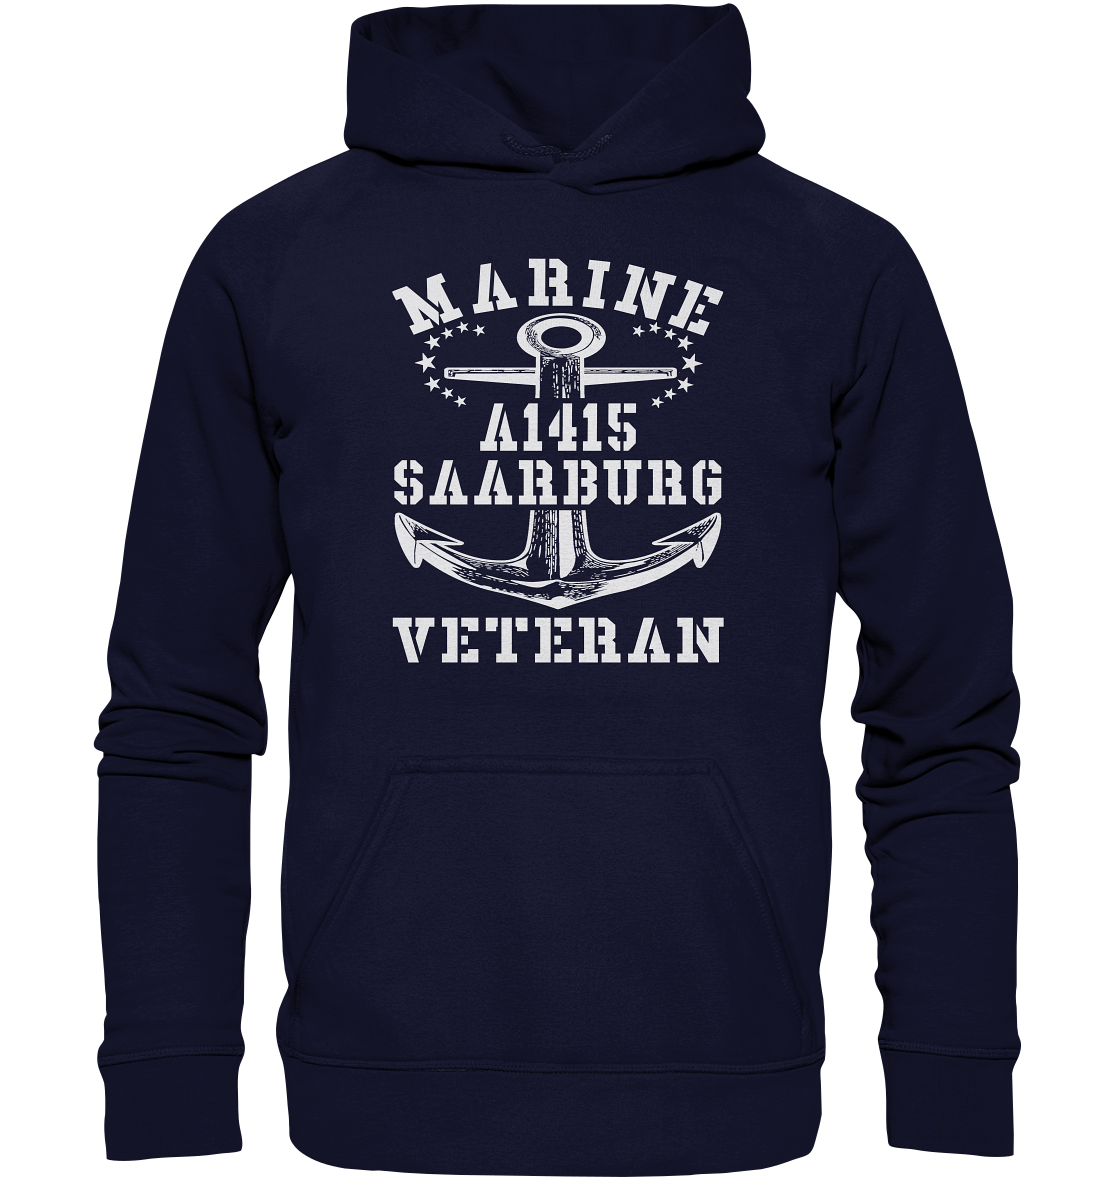 Troßschiff A1415 SAARBURG Marine Veteran - Basic Unisex Hoodie